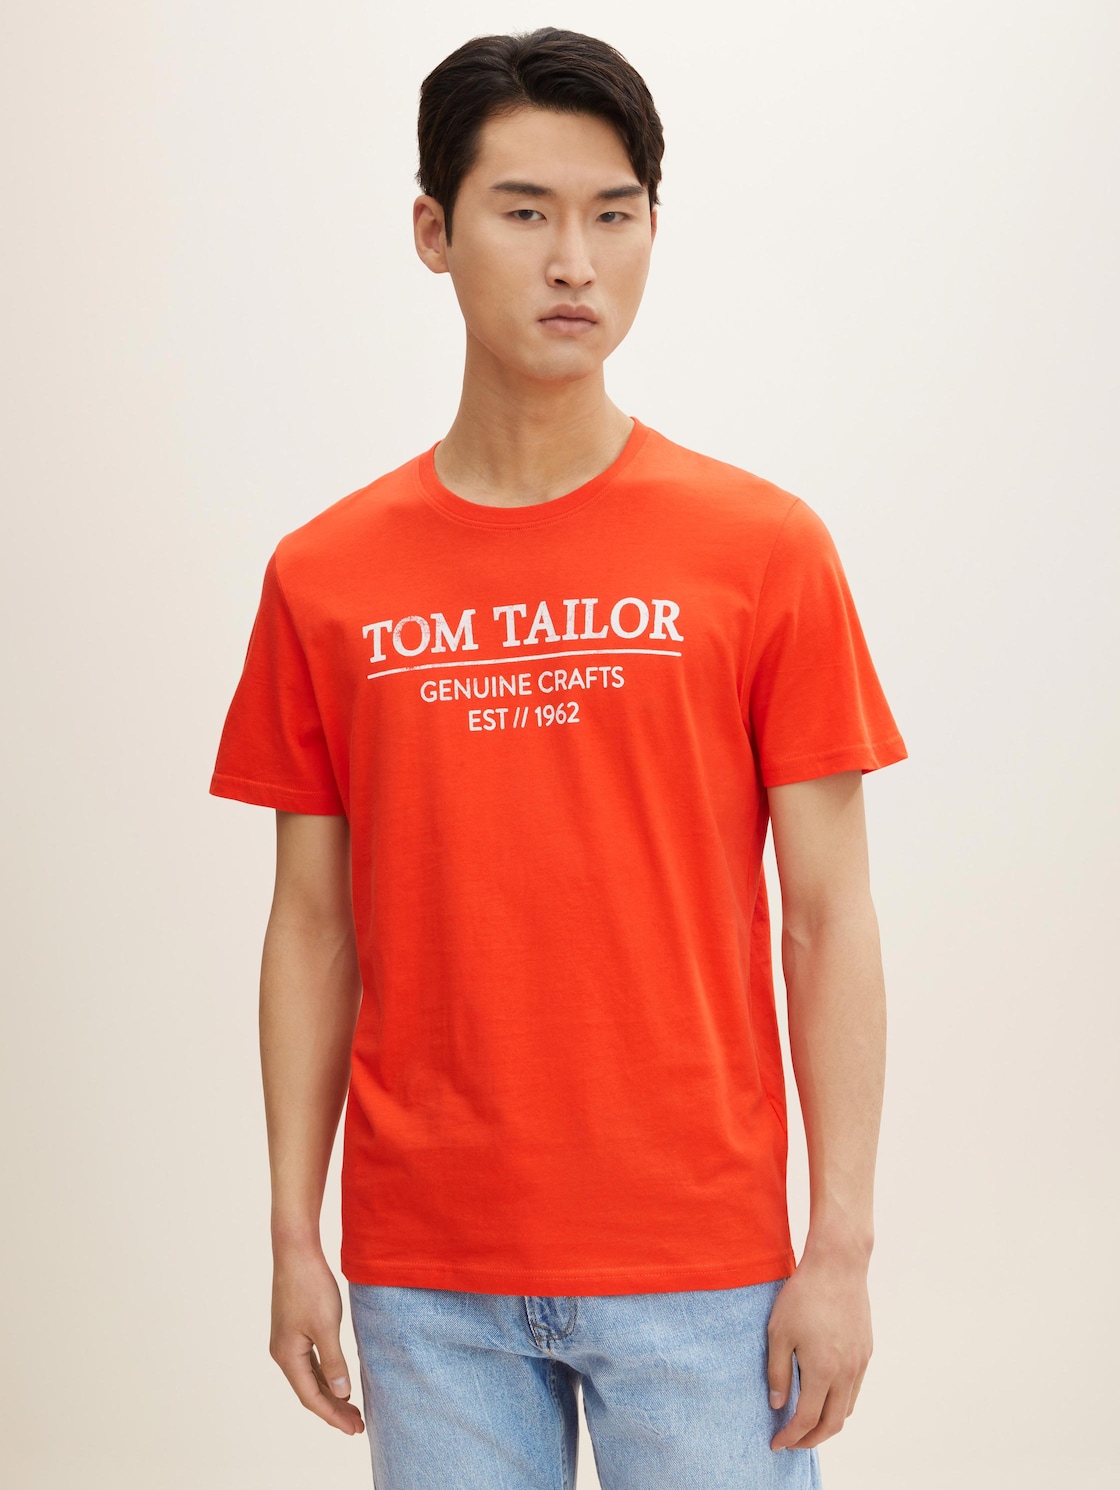 TOM TAILOR Herren T-Shirt mit Bio-Baumwolle, rot, Logo Print, Gr. XXL,